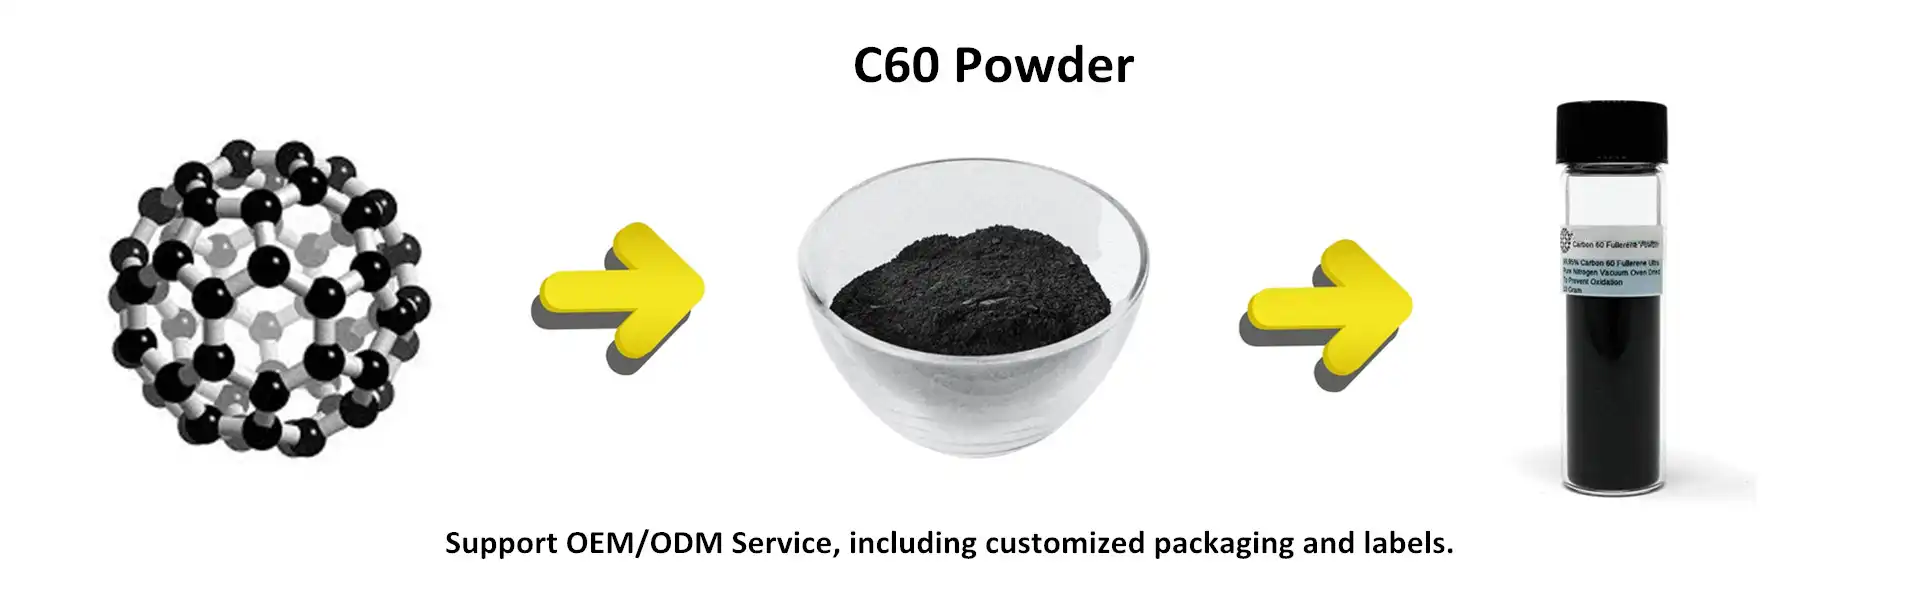 c60 powder